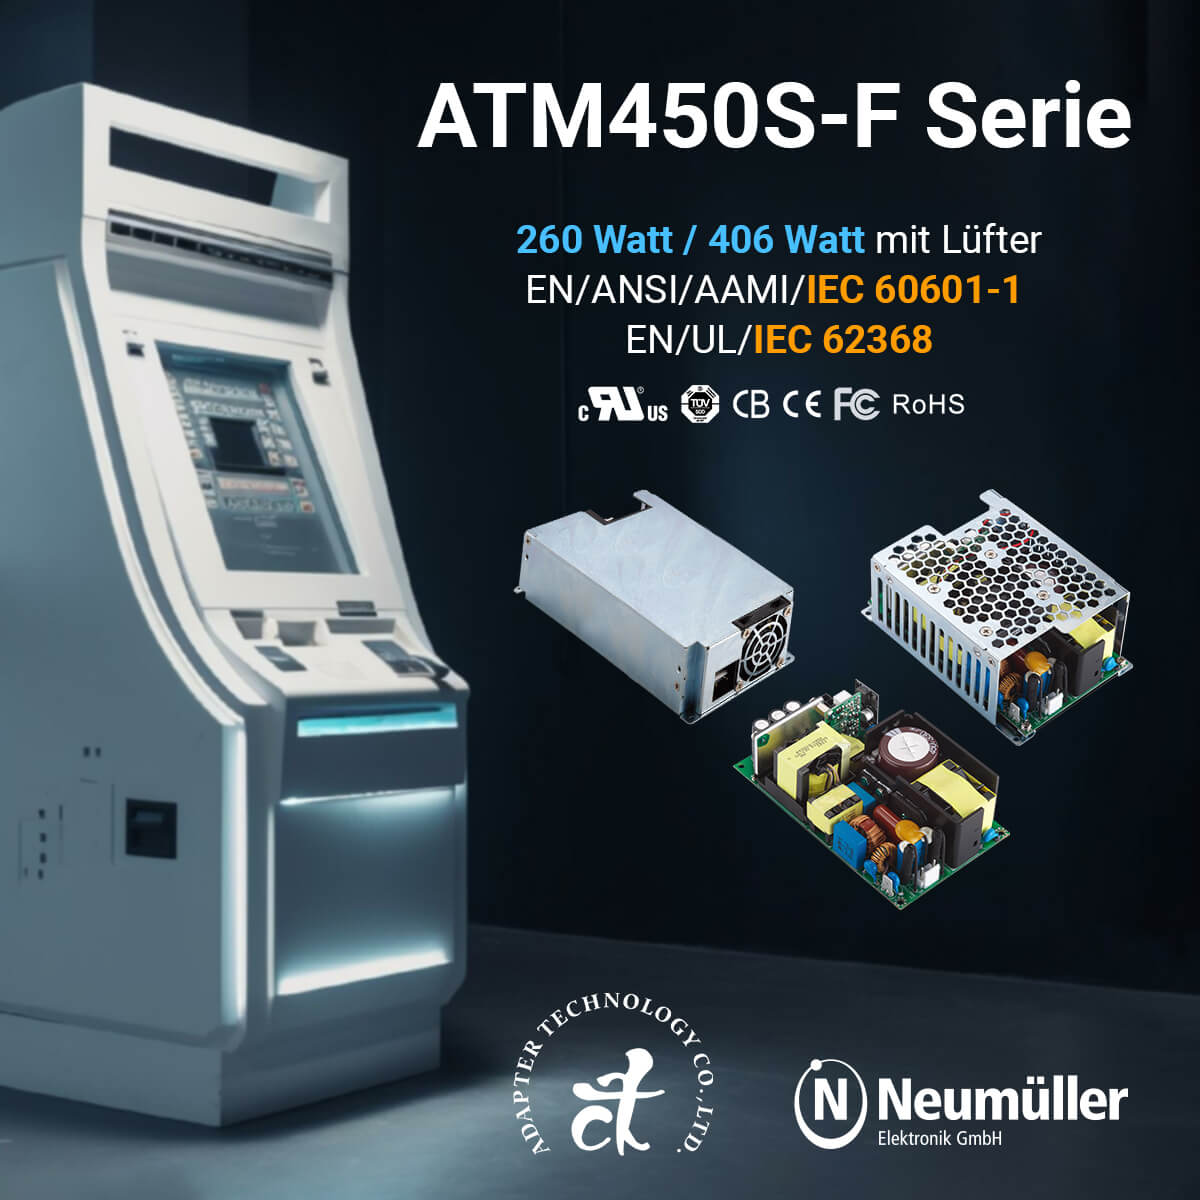 ATM450S-F: Kompakte 460 Watt in verschiedenen Formfaktoren